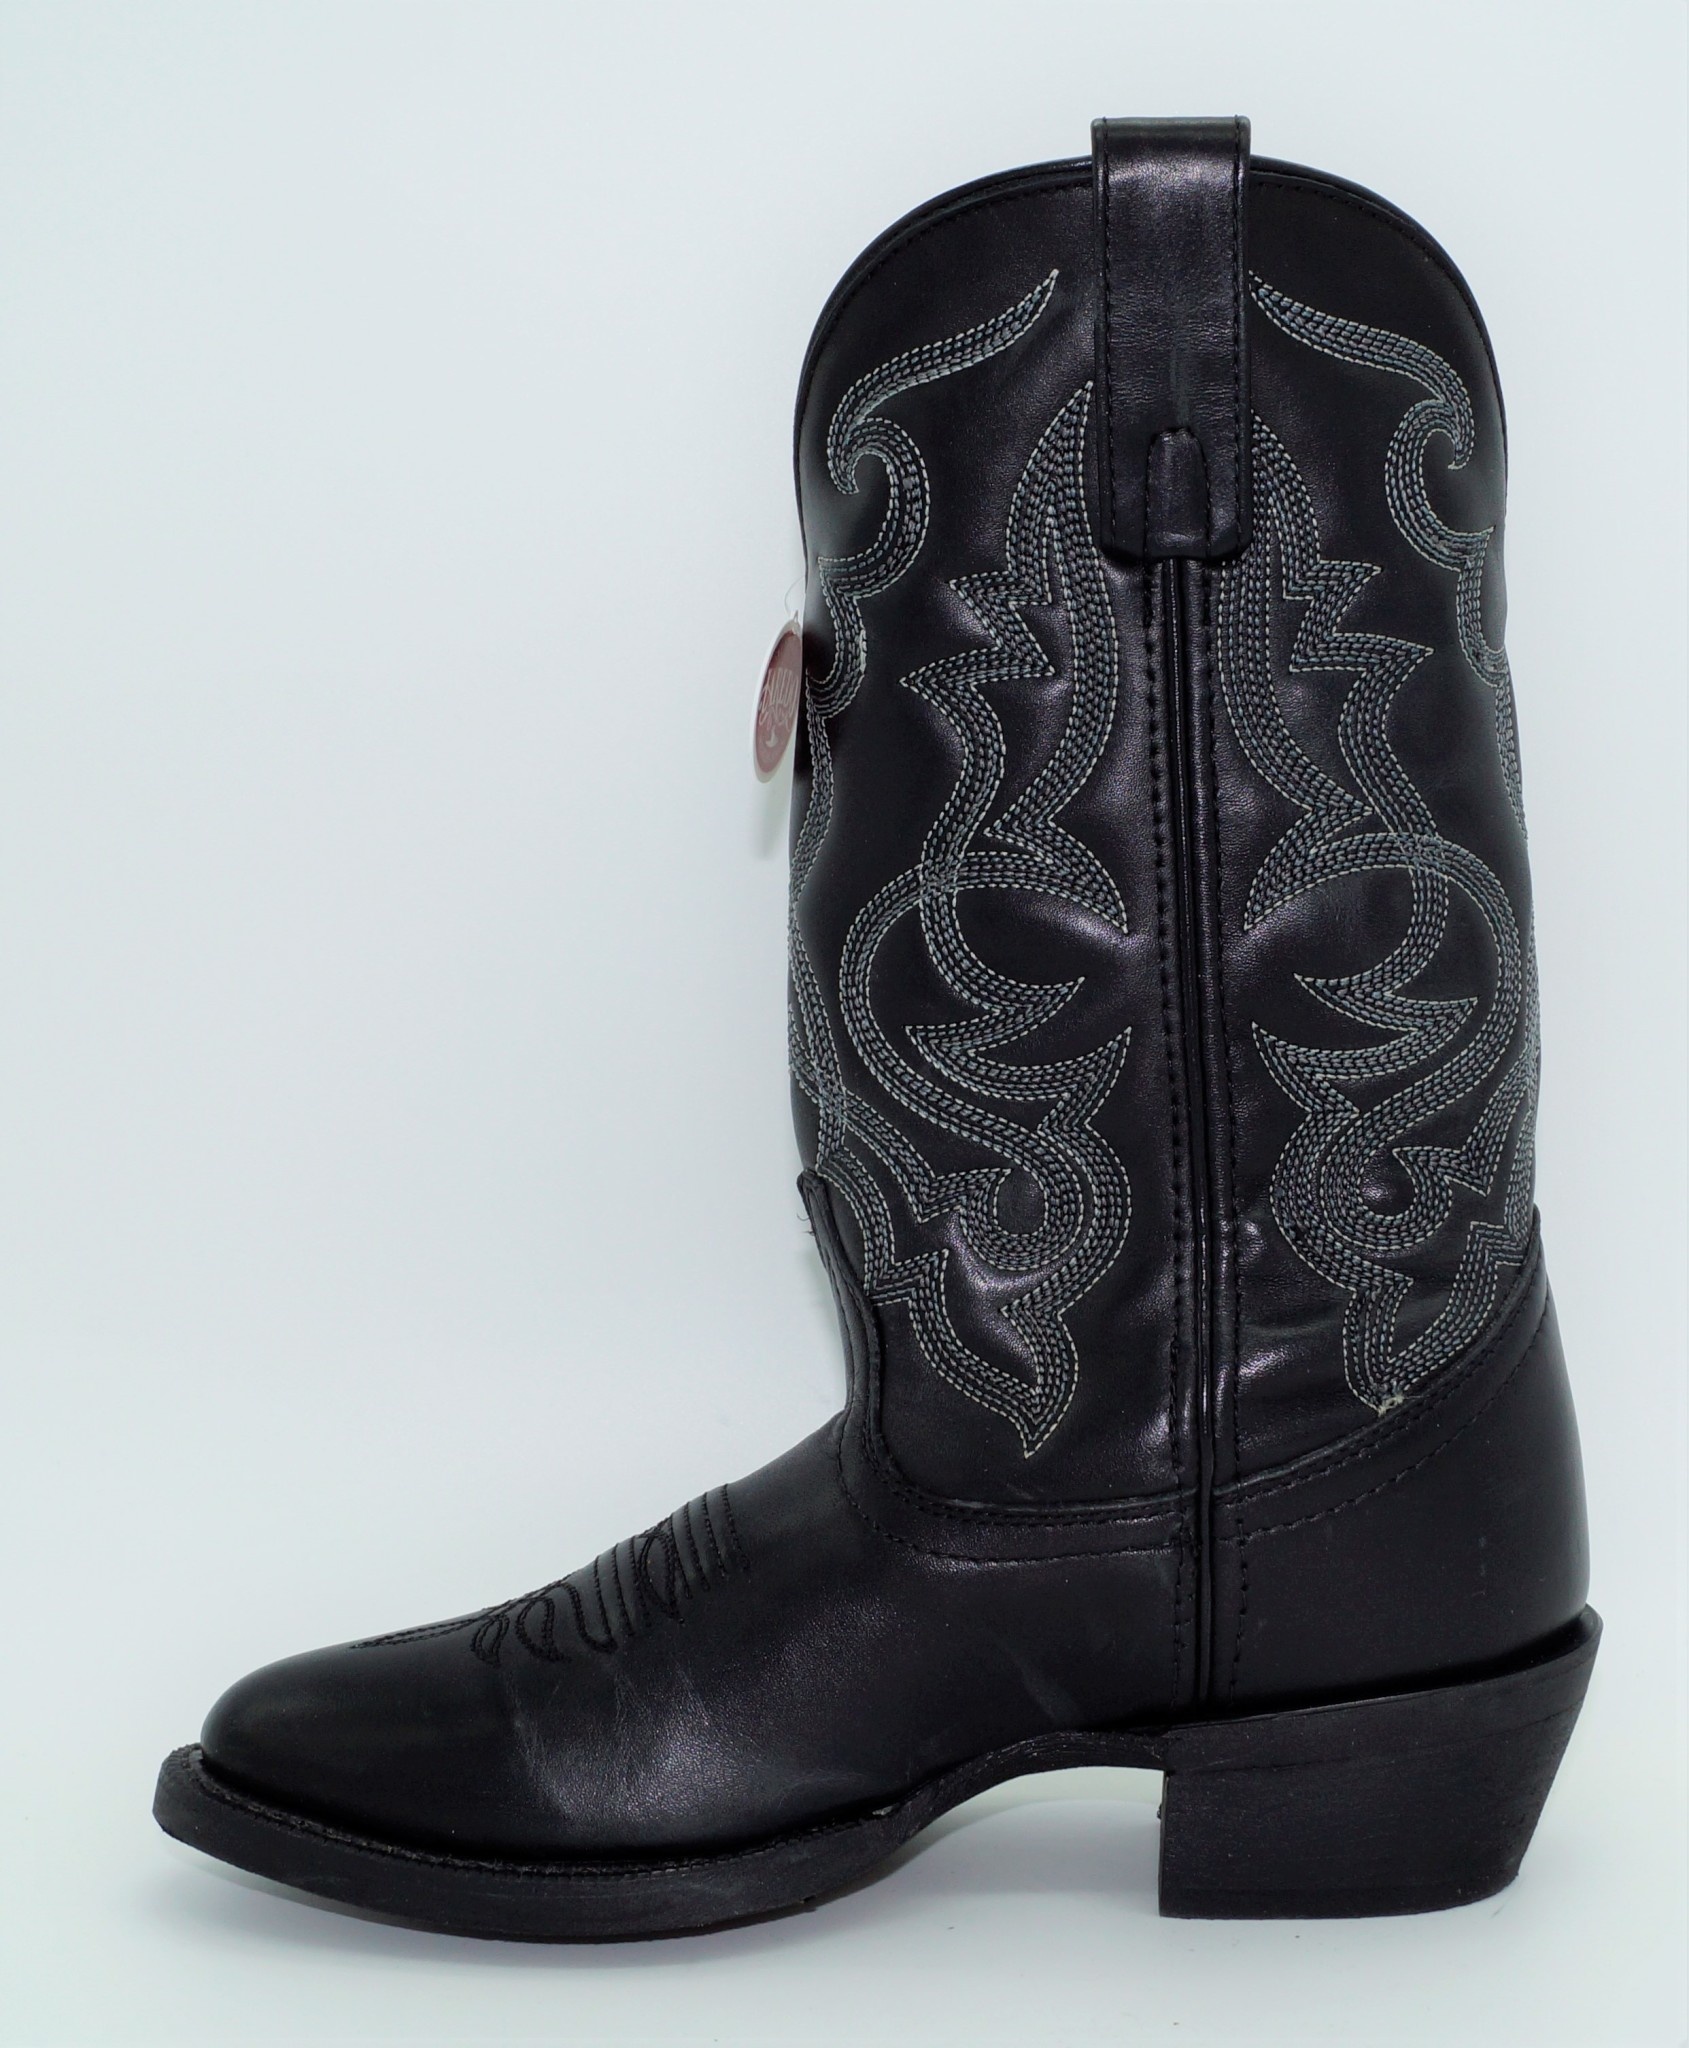 laredo women's maddie western boots